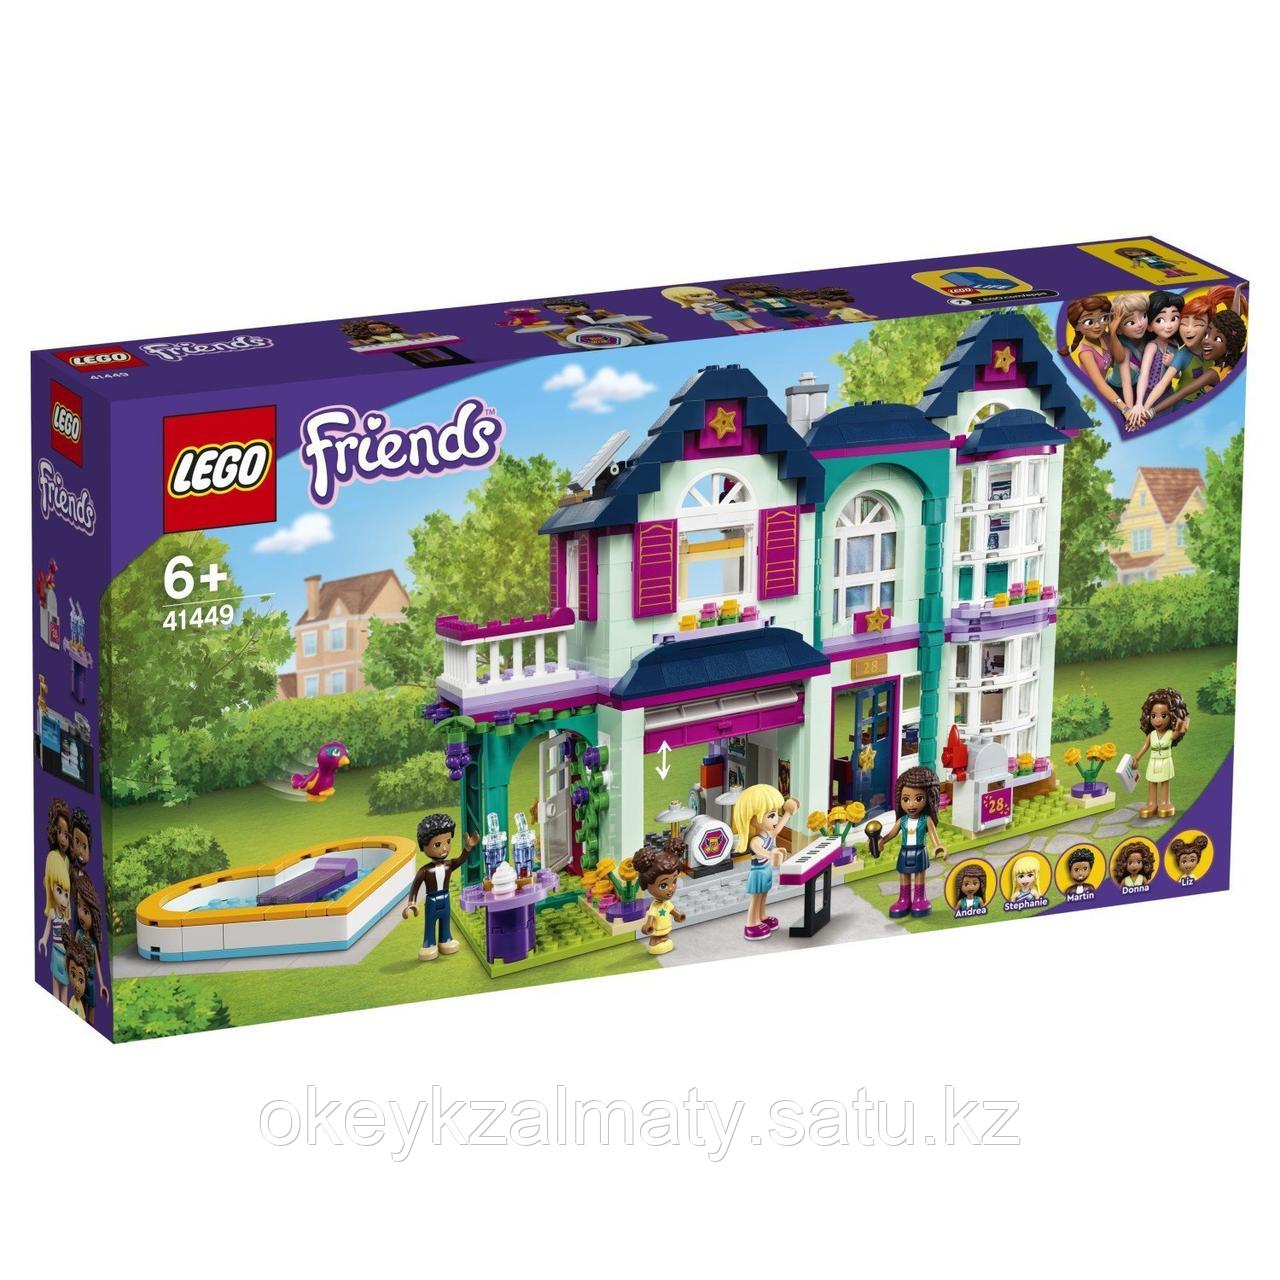 LEGO Friends: Дом семьи Андреа 41449